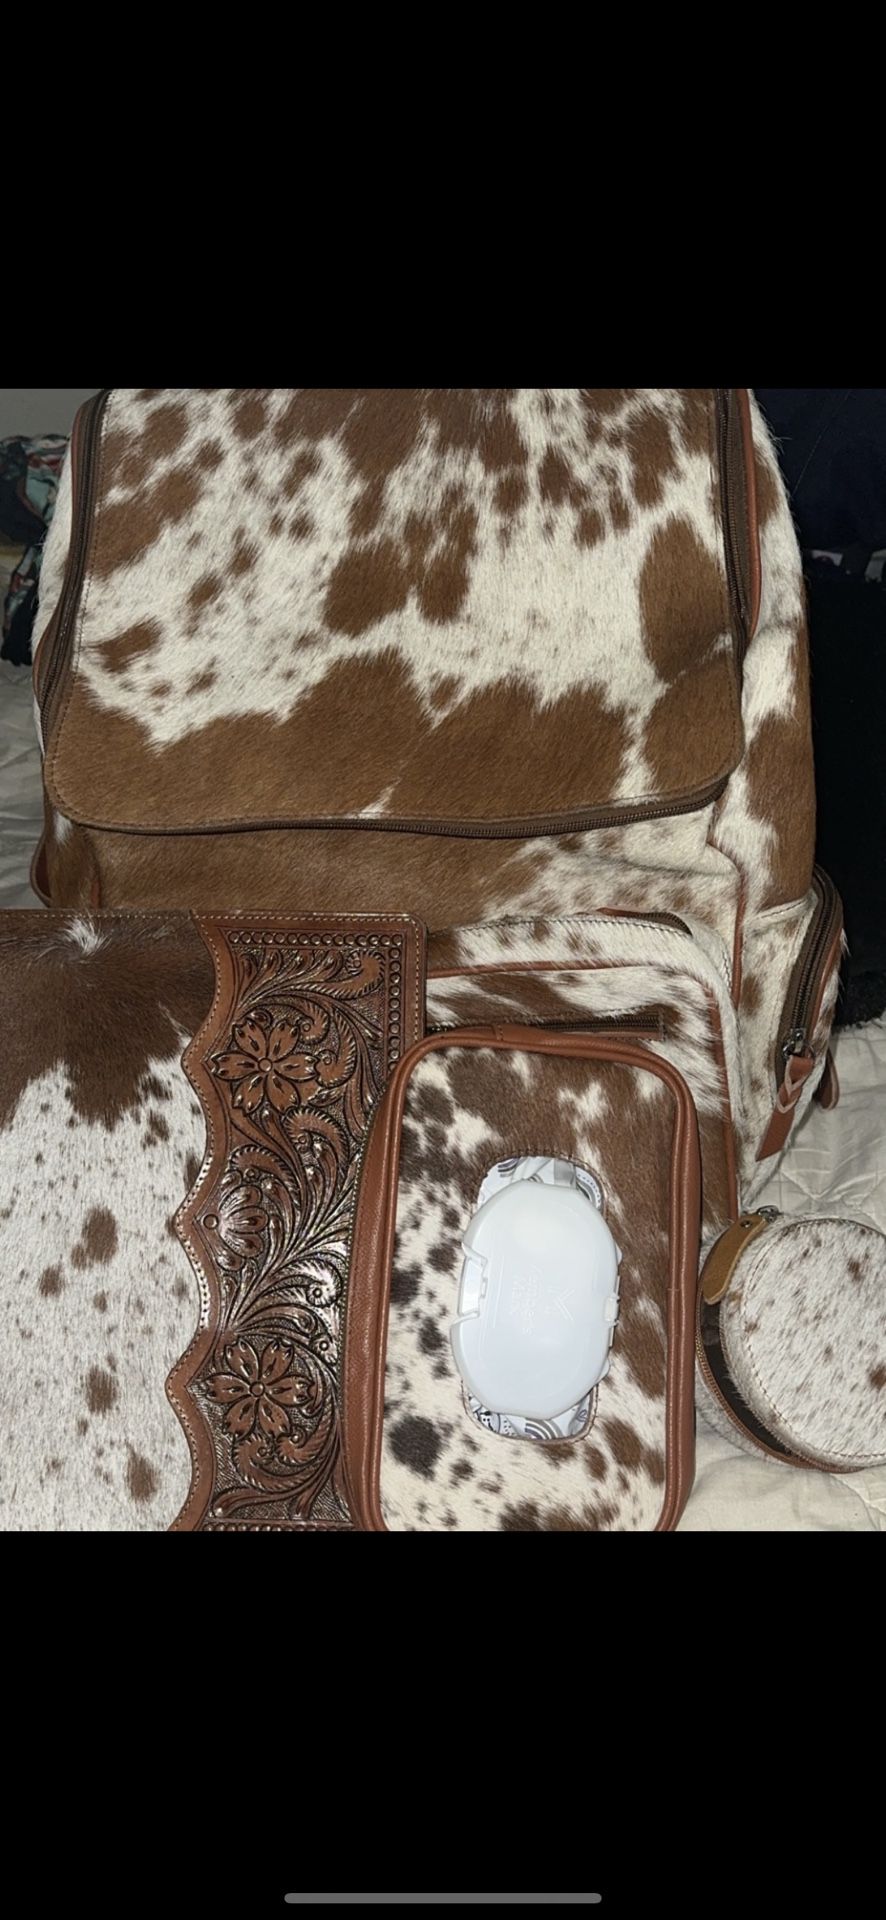 western cowhide backpack set